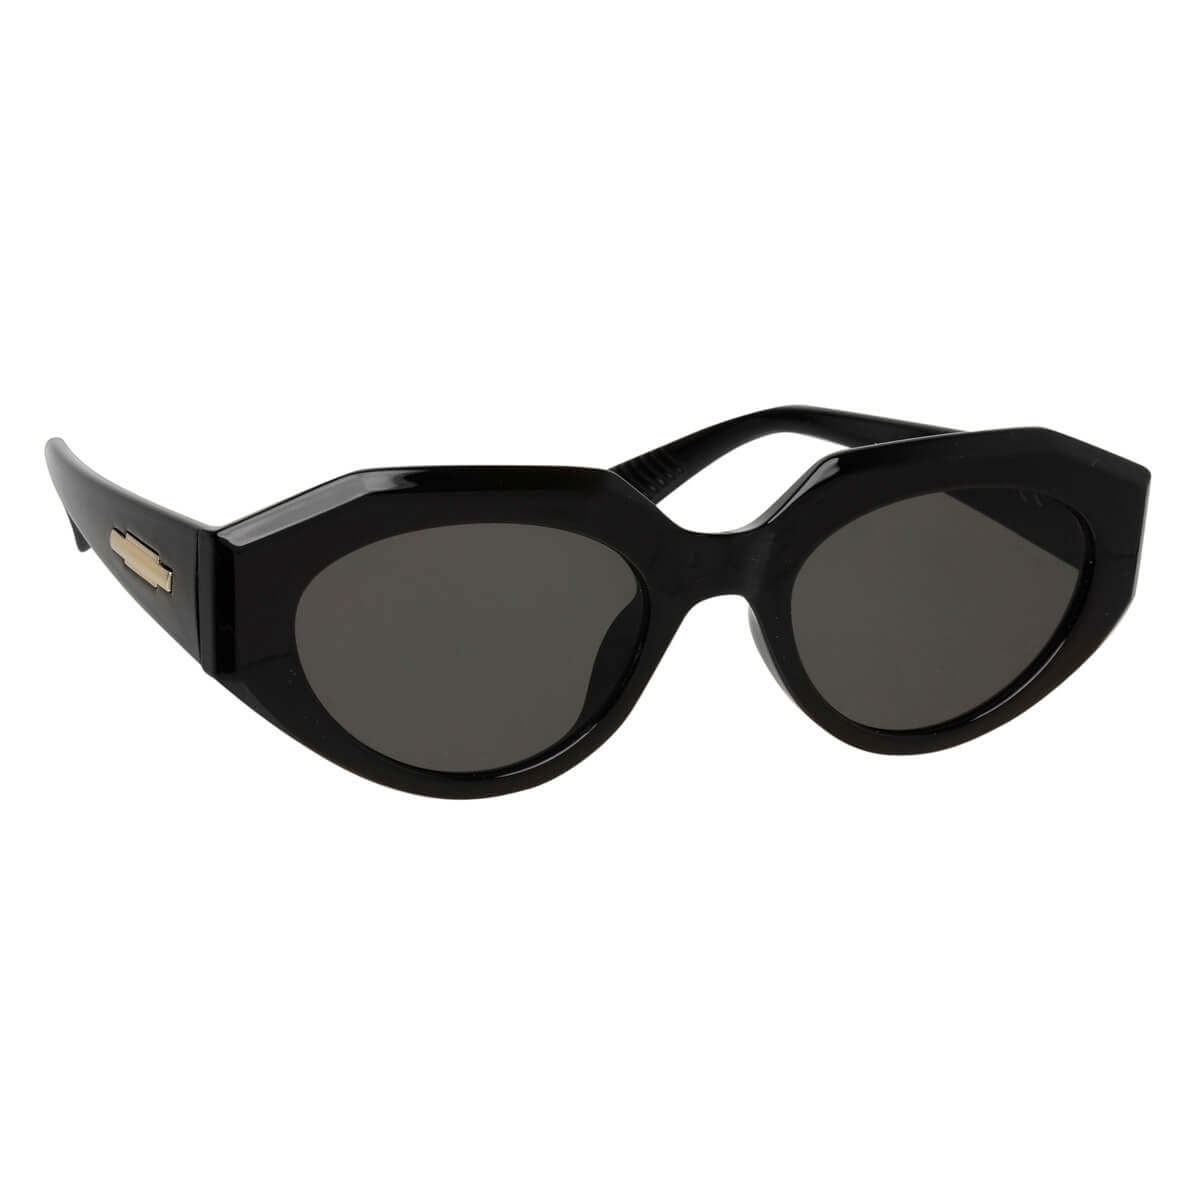 Angular oval sunglasses